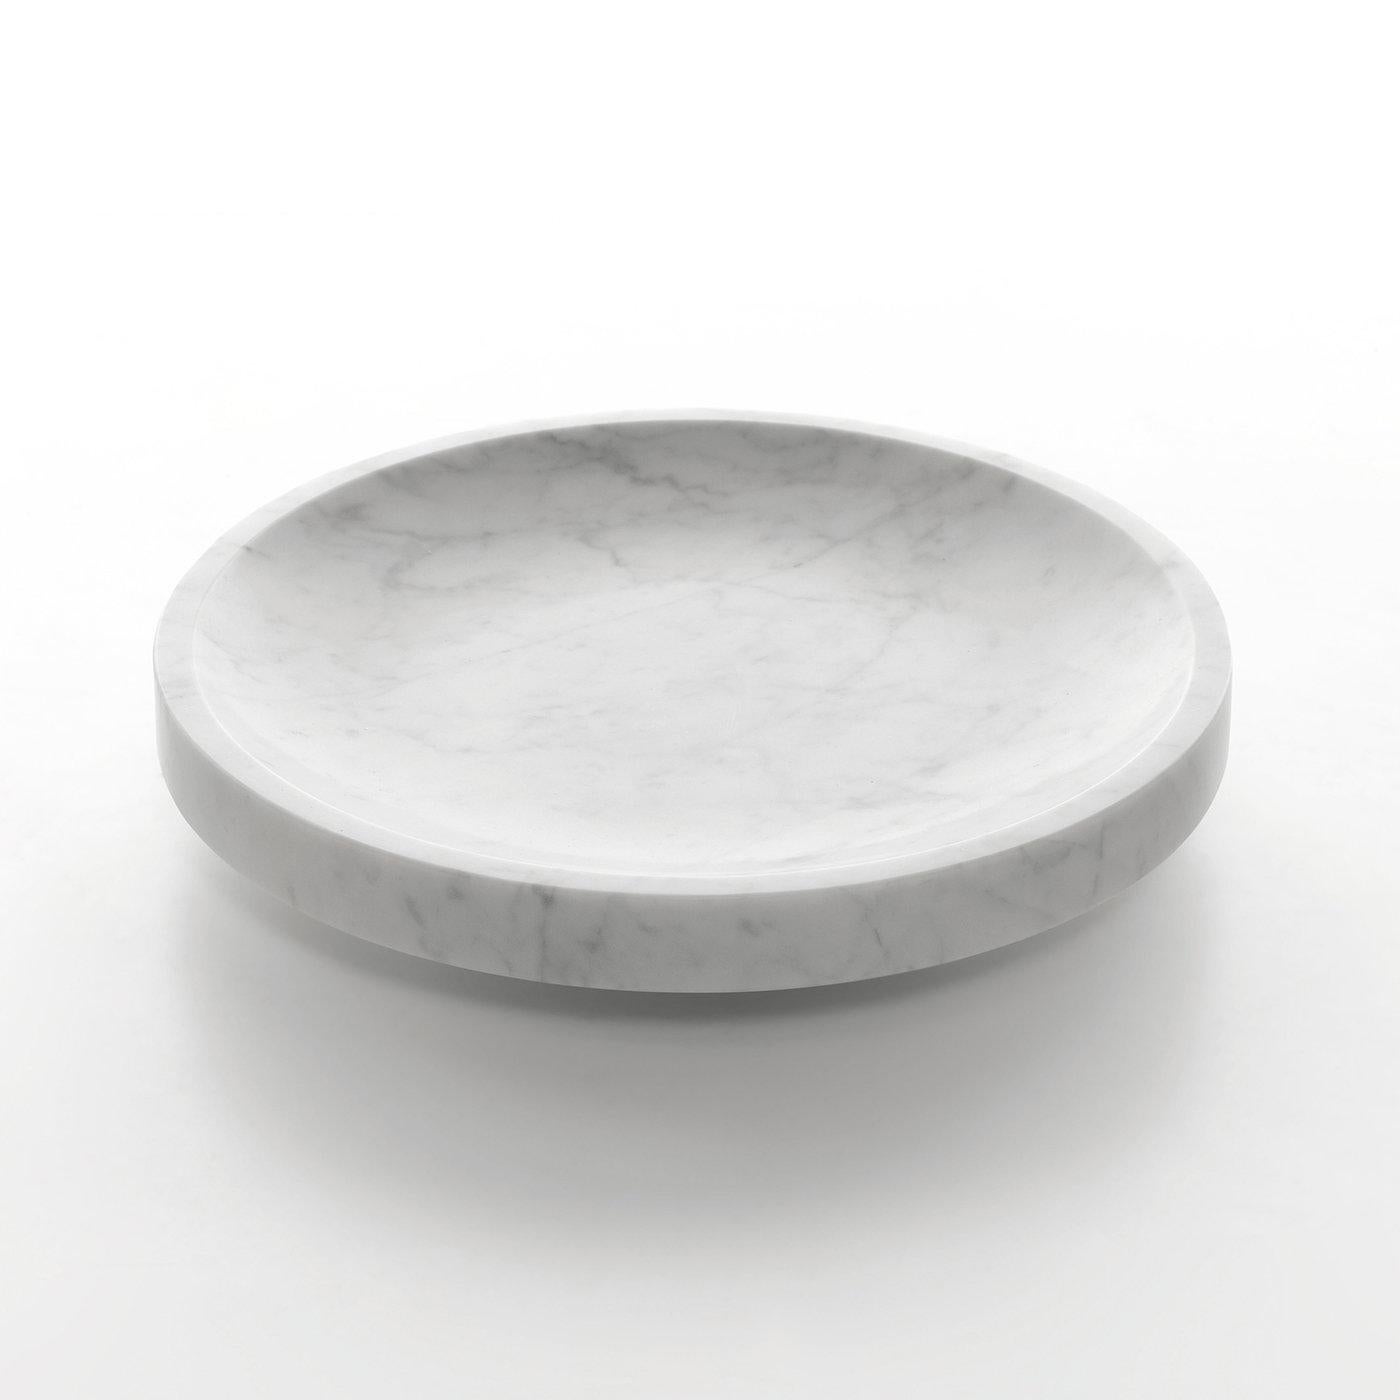 Obstschale, rund, aus weißem Carrara-Marmor, matt poliert. Auch in schwarzem Marquina-Marmor, matt poliert, erhältlich.
               